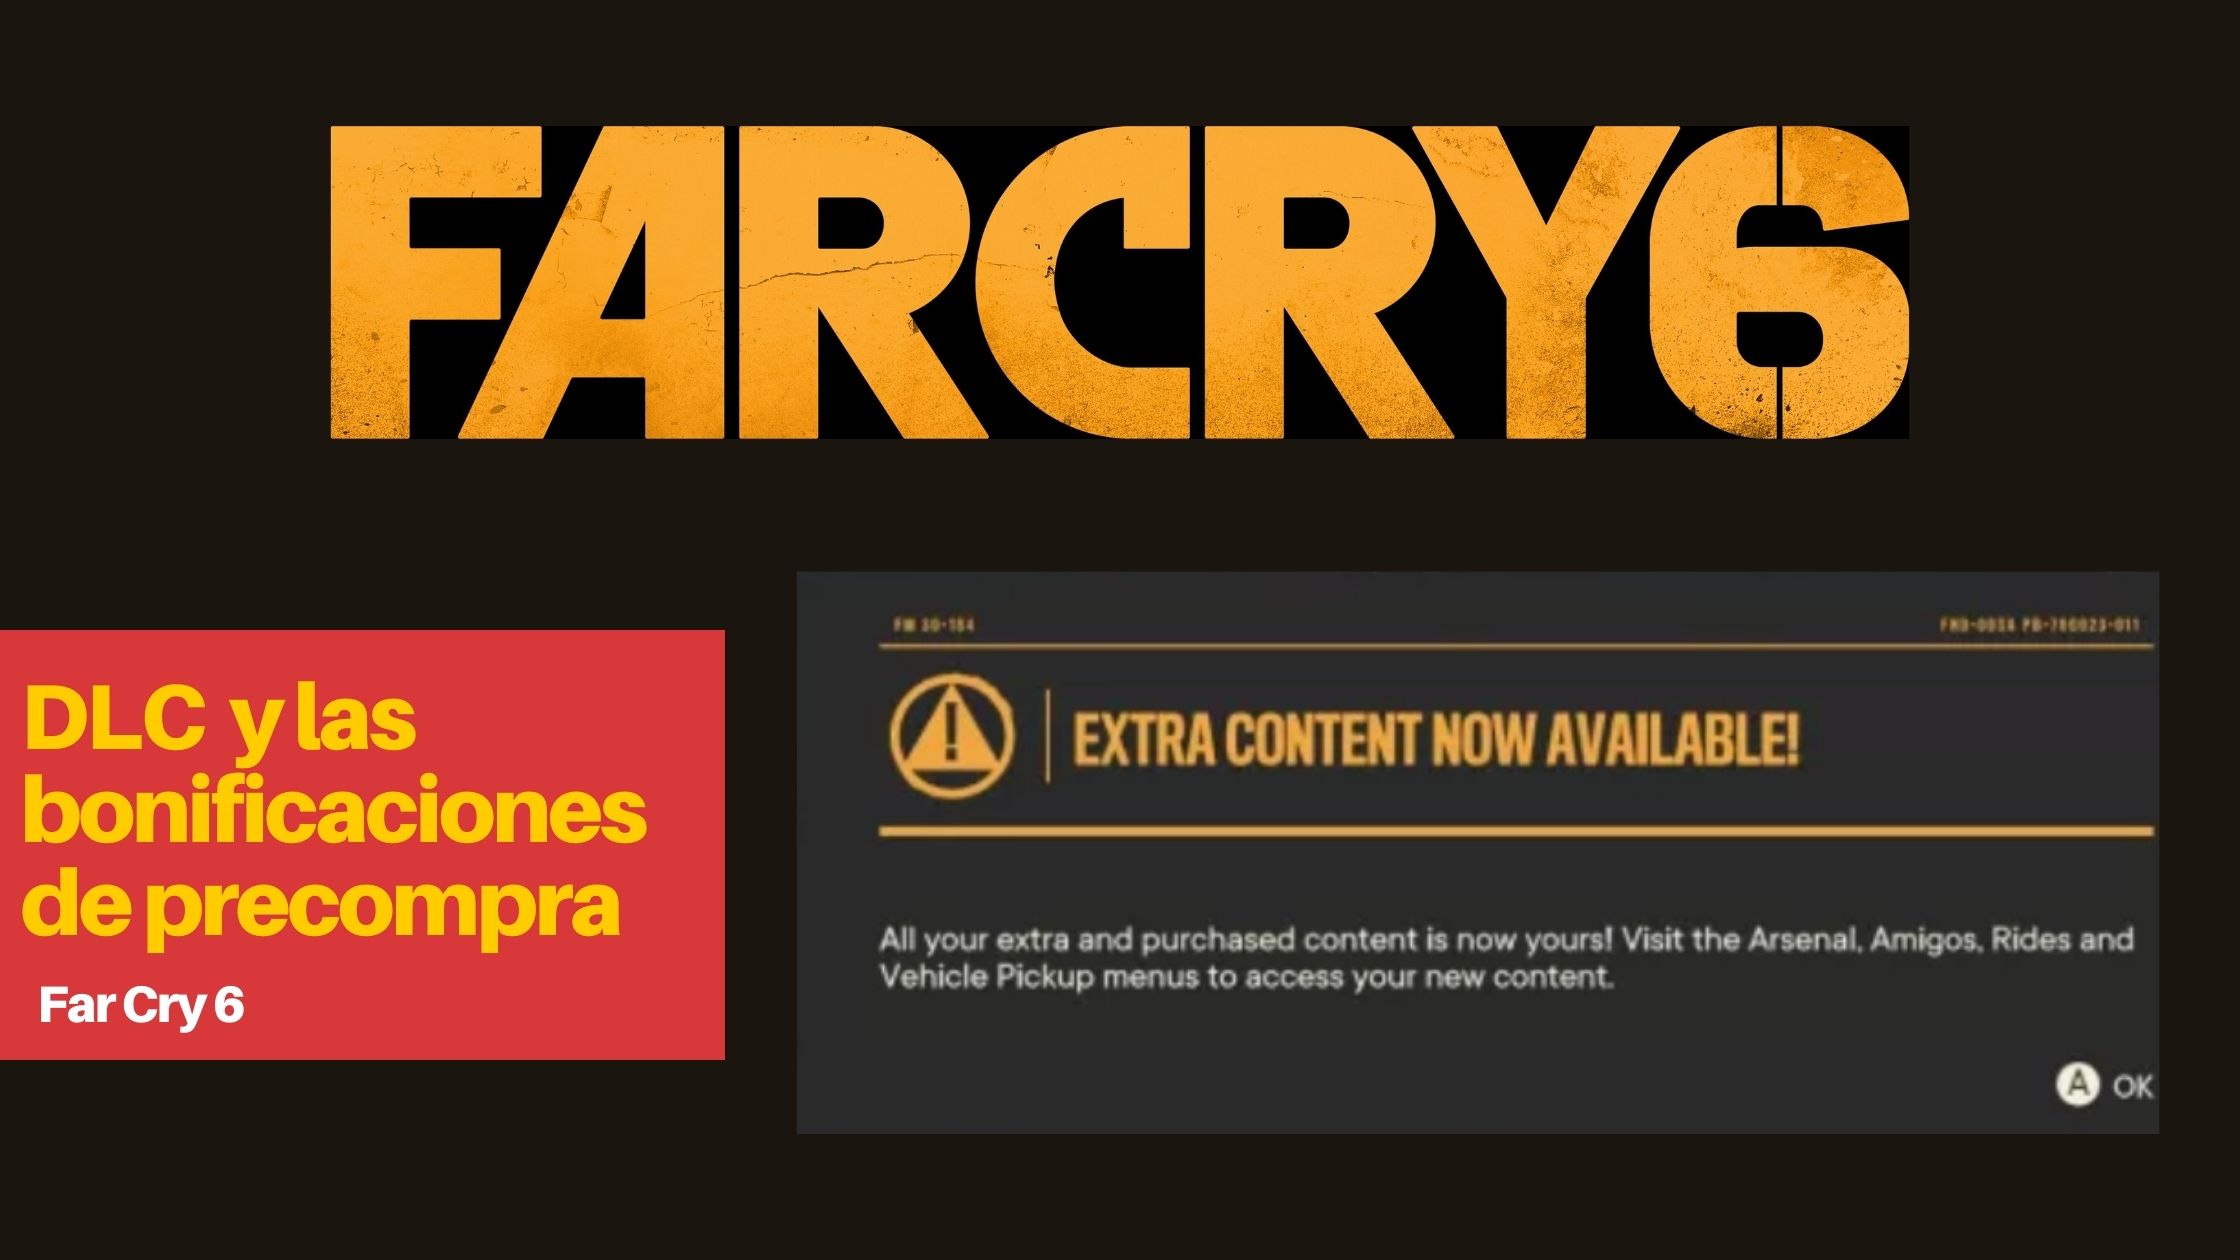 Dónde conseguir los DLC de Far Cry 6 y las bonificaciones de precompra